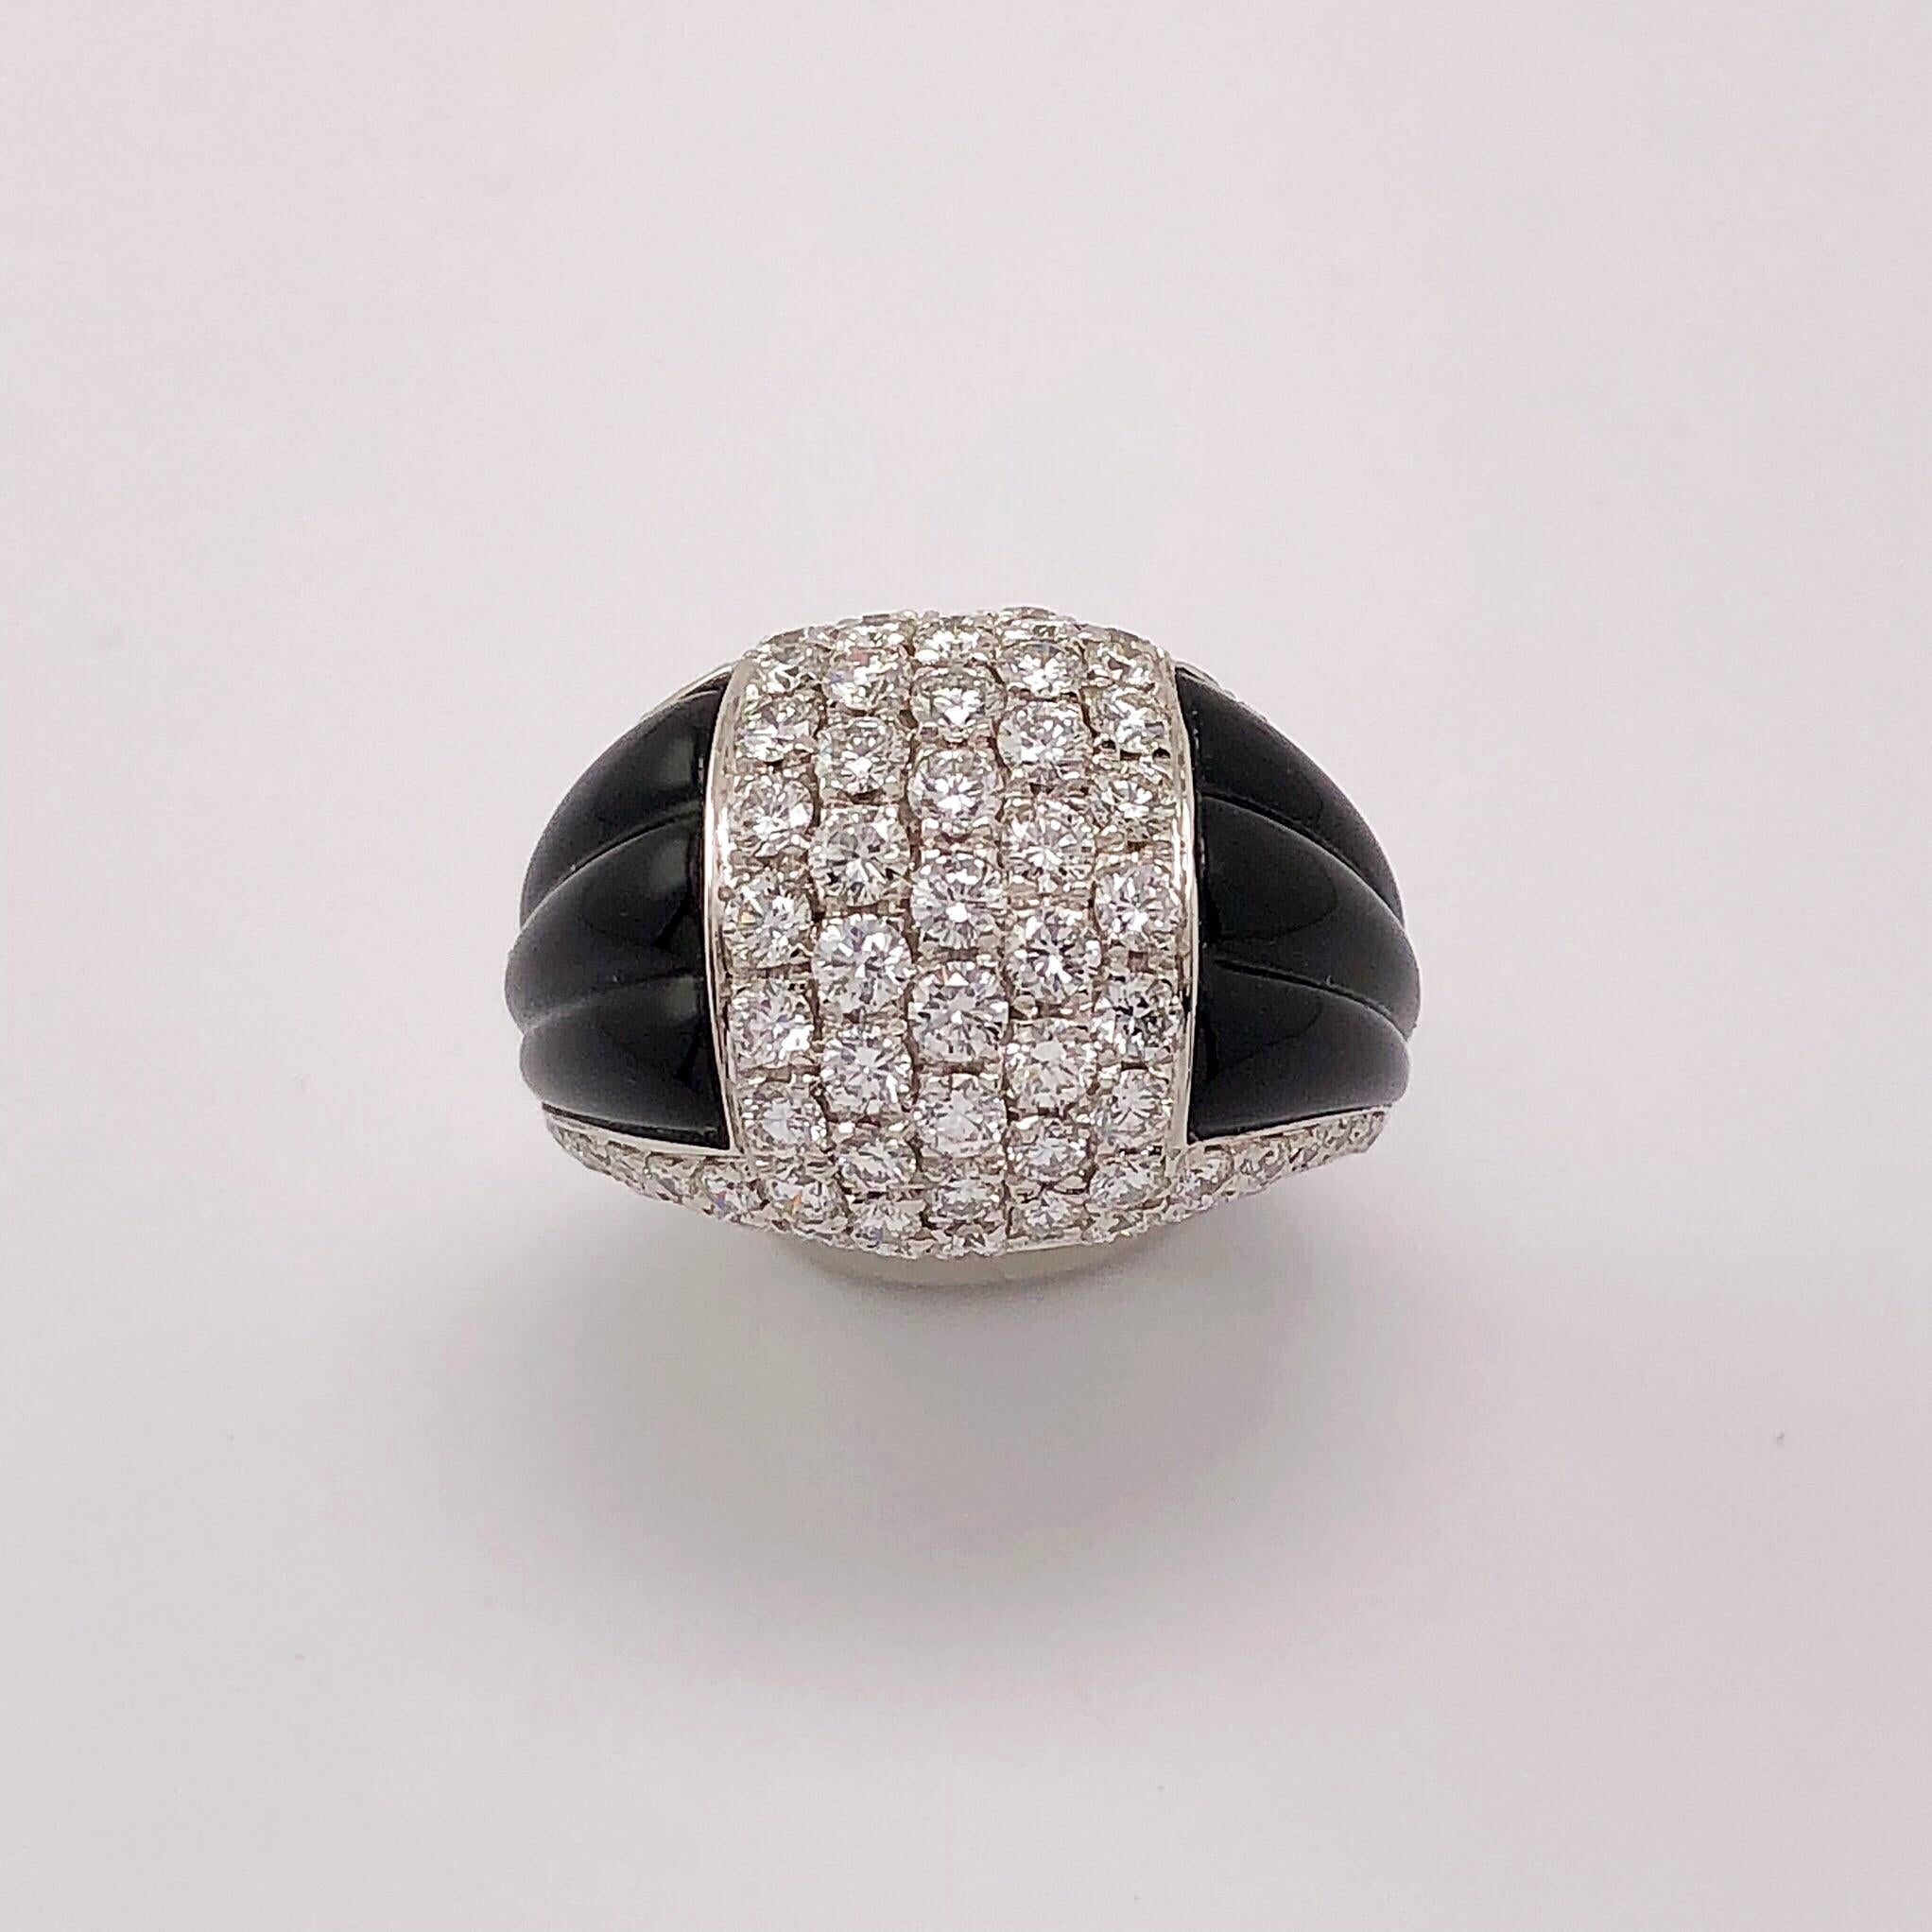 Cette magnifique bague en diamant en or blanc 18 kt. est fabriquée à la main par le célèbre designer italien Picchiotti.
Méticuleusement serti de 1,94 carats de fins diamants blancs brillants, flanqué d'onyx noir cannelé sculpté à la main.
Bague